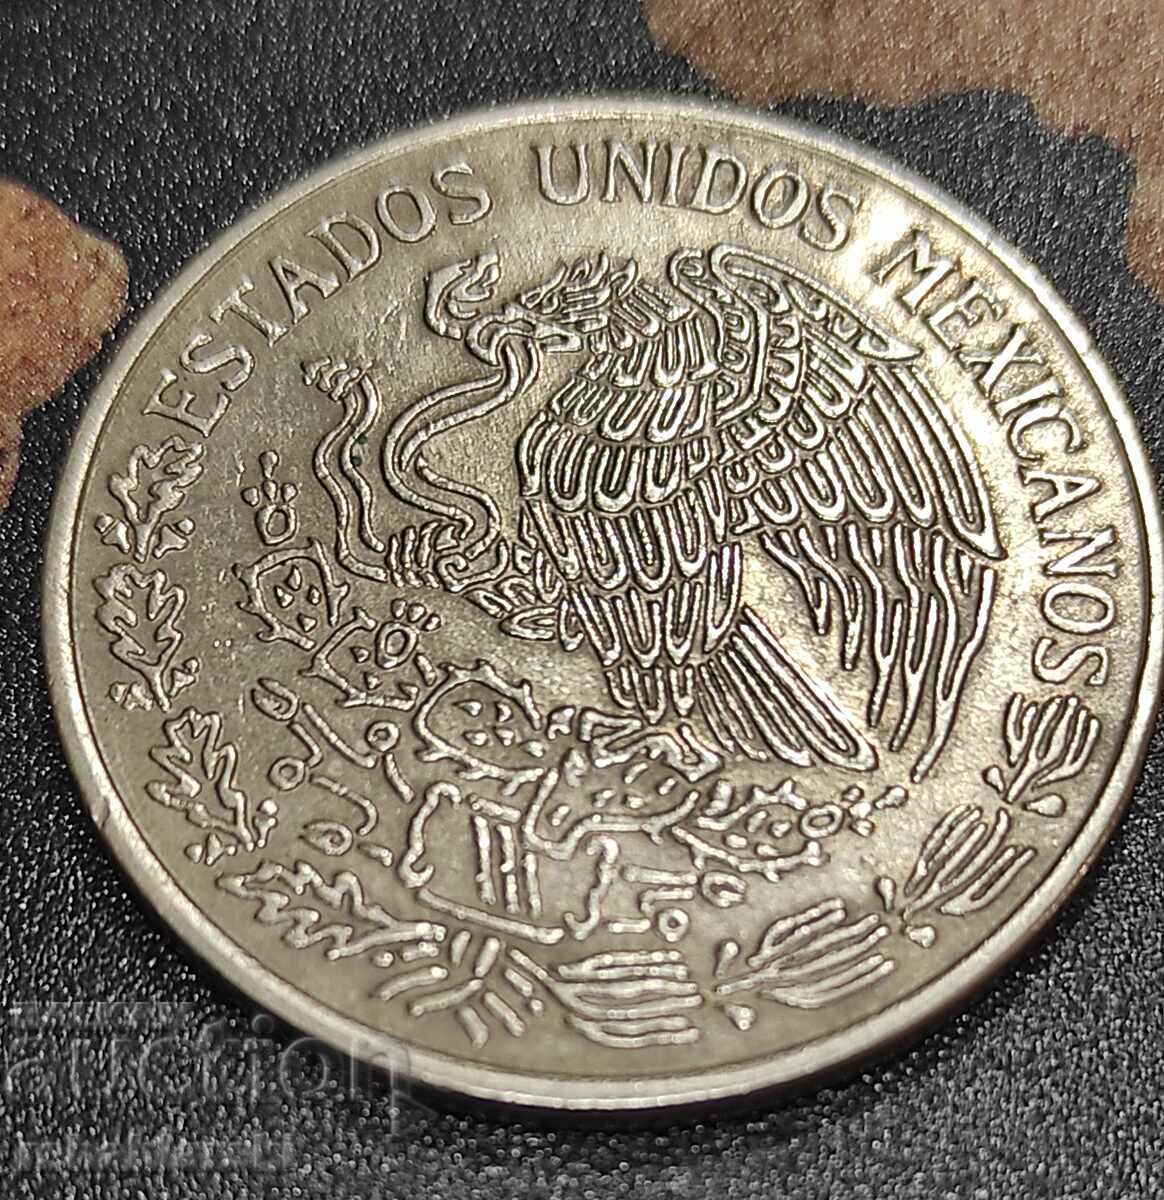 Coin Mexico 1 peso, 1979